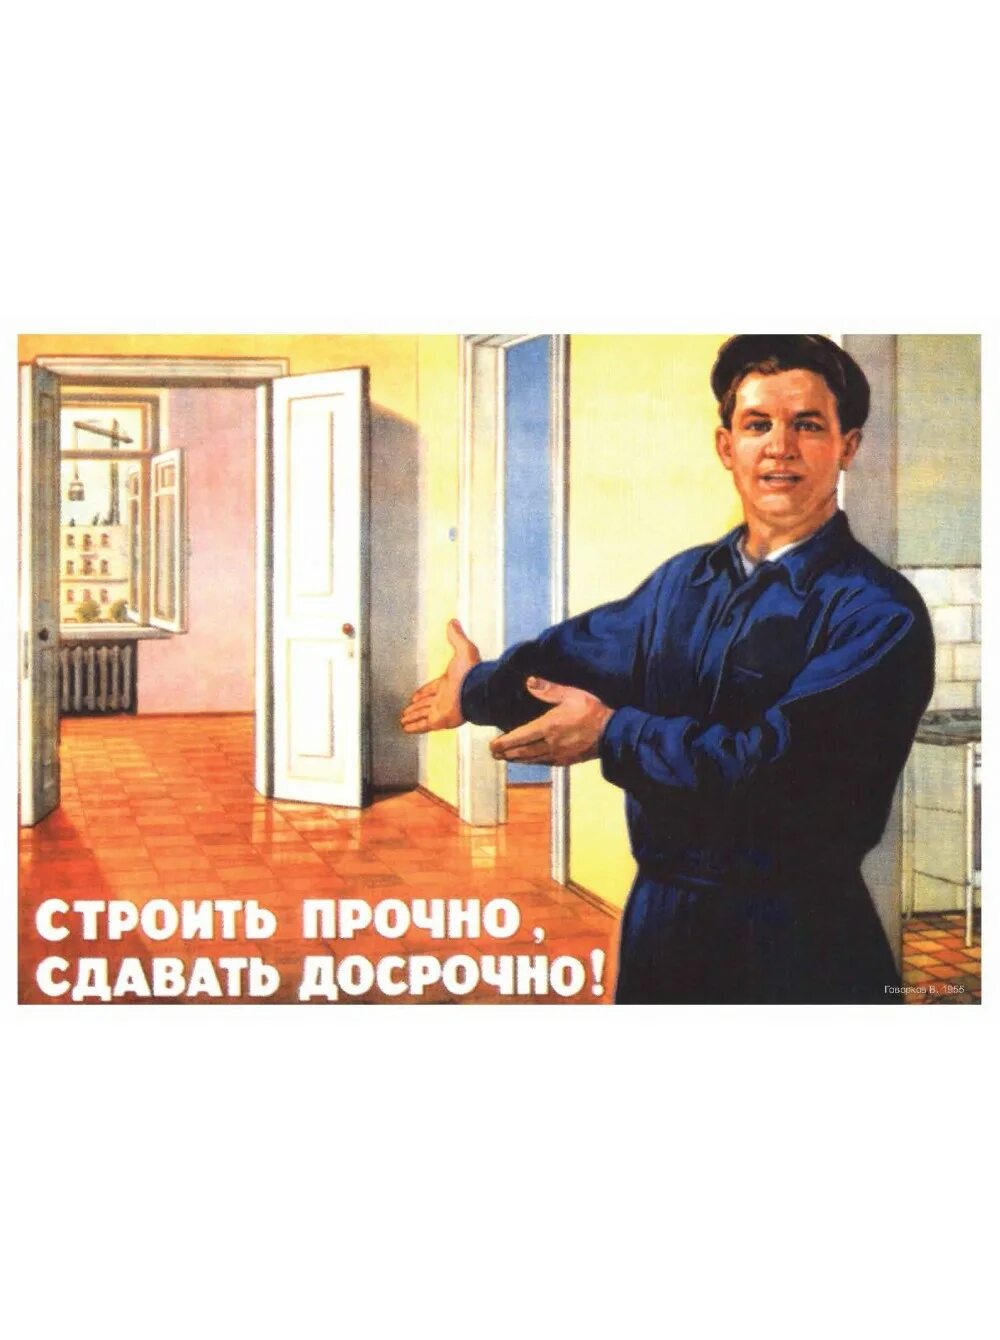 Кидала работала. Плакаты СССР. Бросай работу. Бросай работу плакат. Бесплатное жилье СССР плакат.